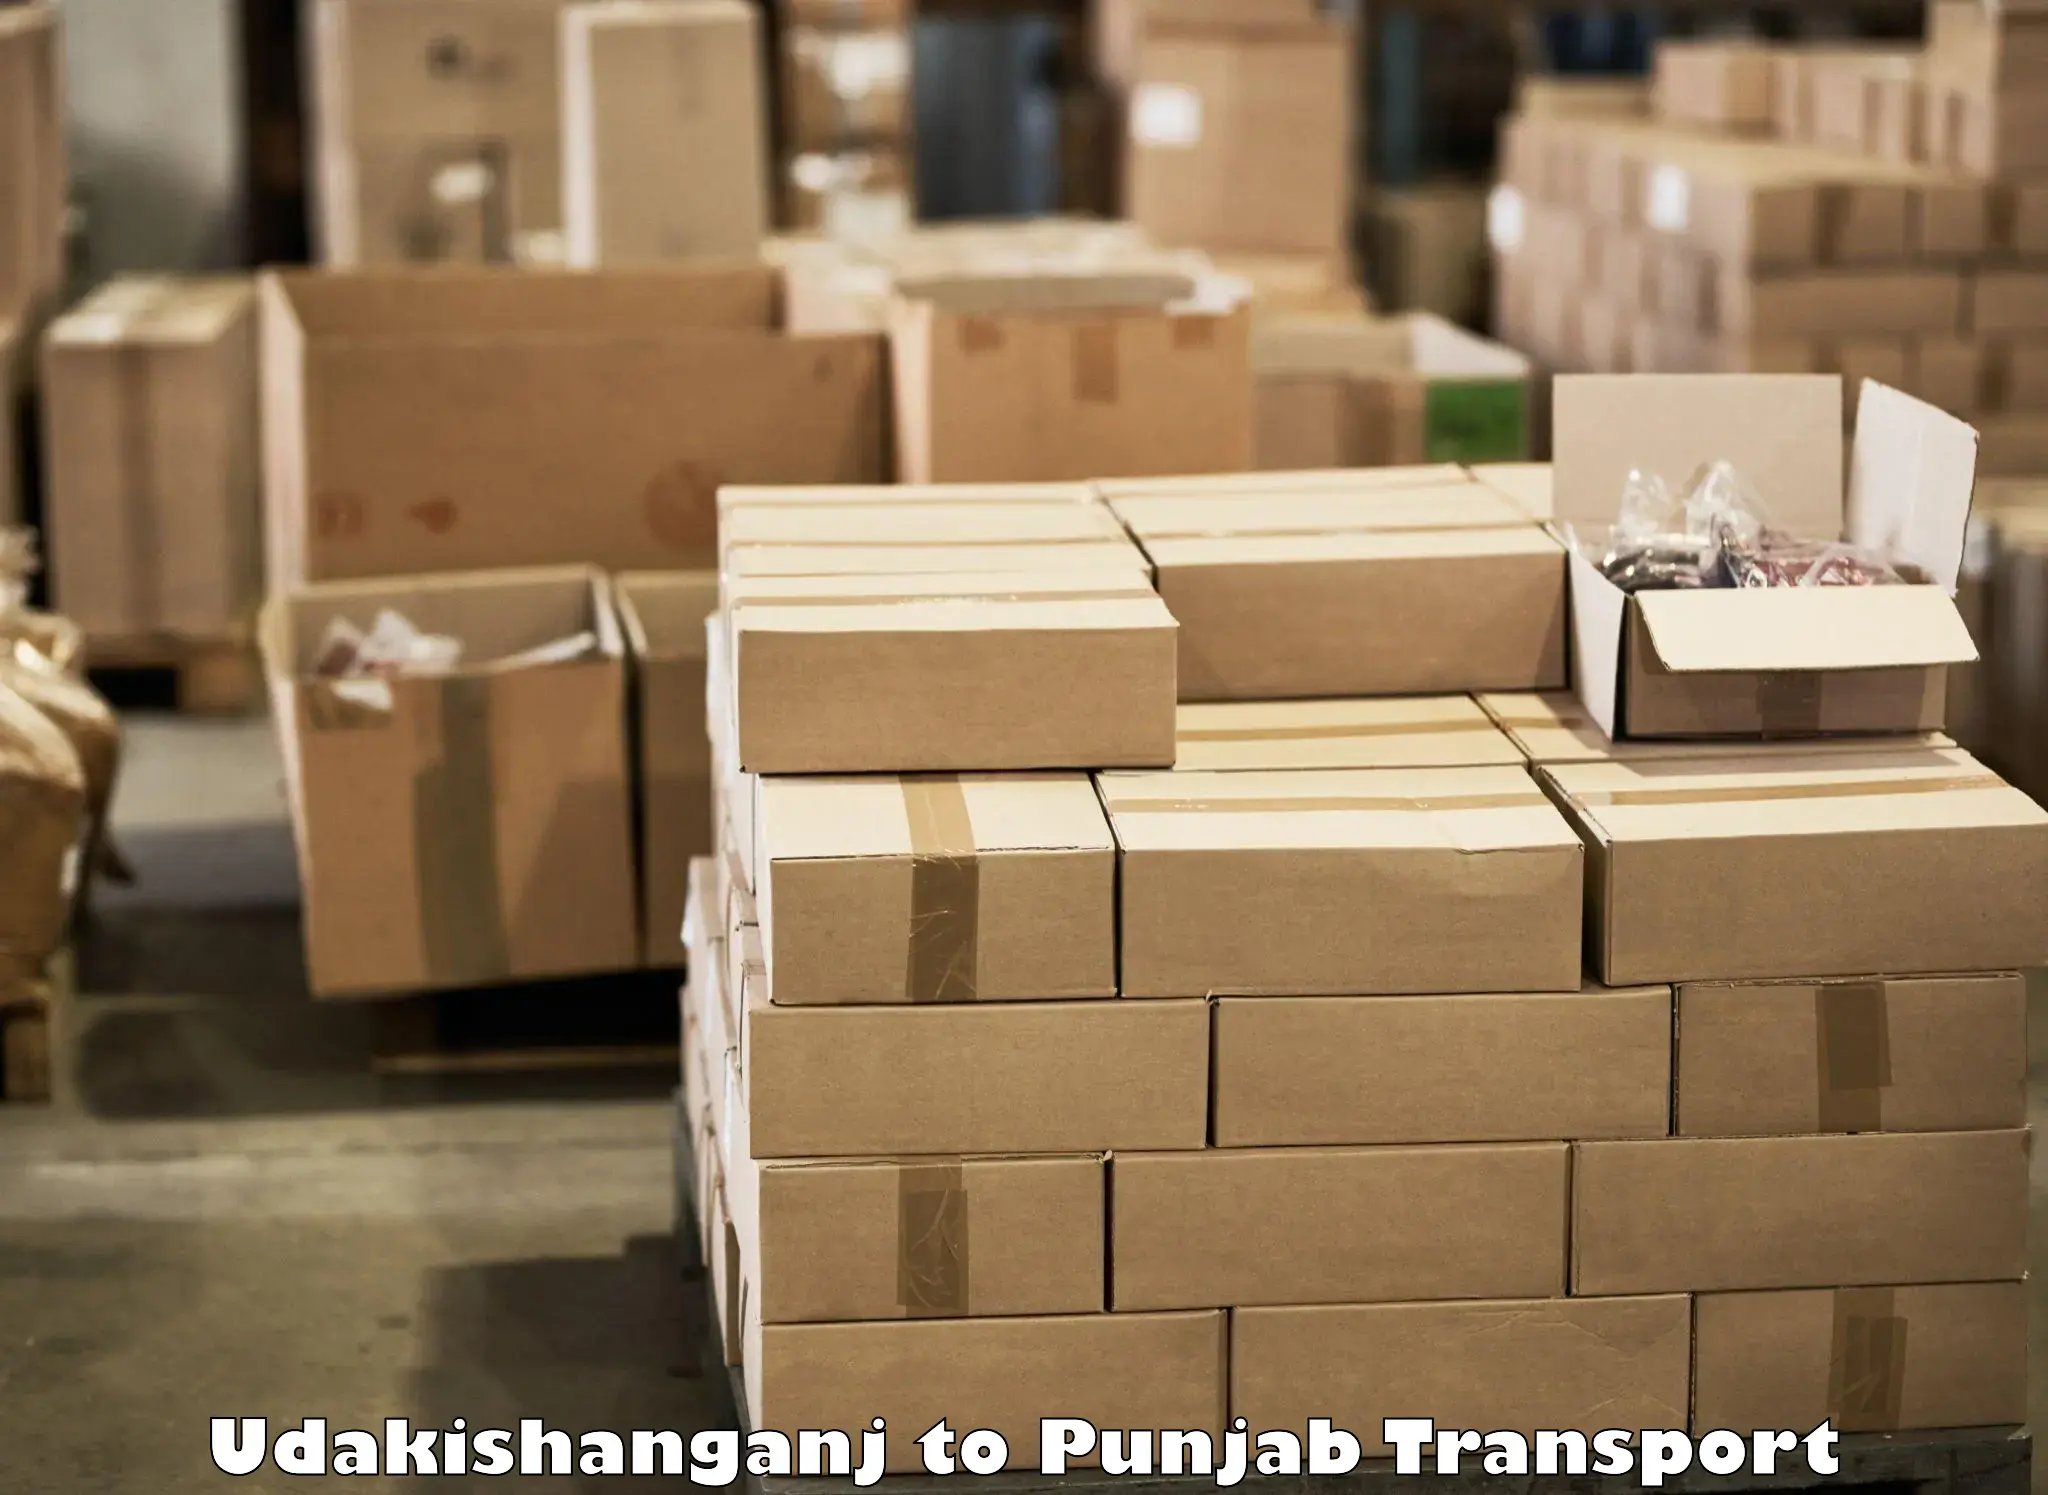 Commercial transport service Udakishanganj to Kapurthala